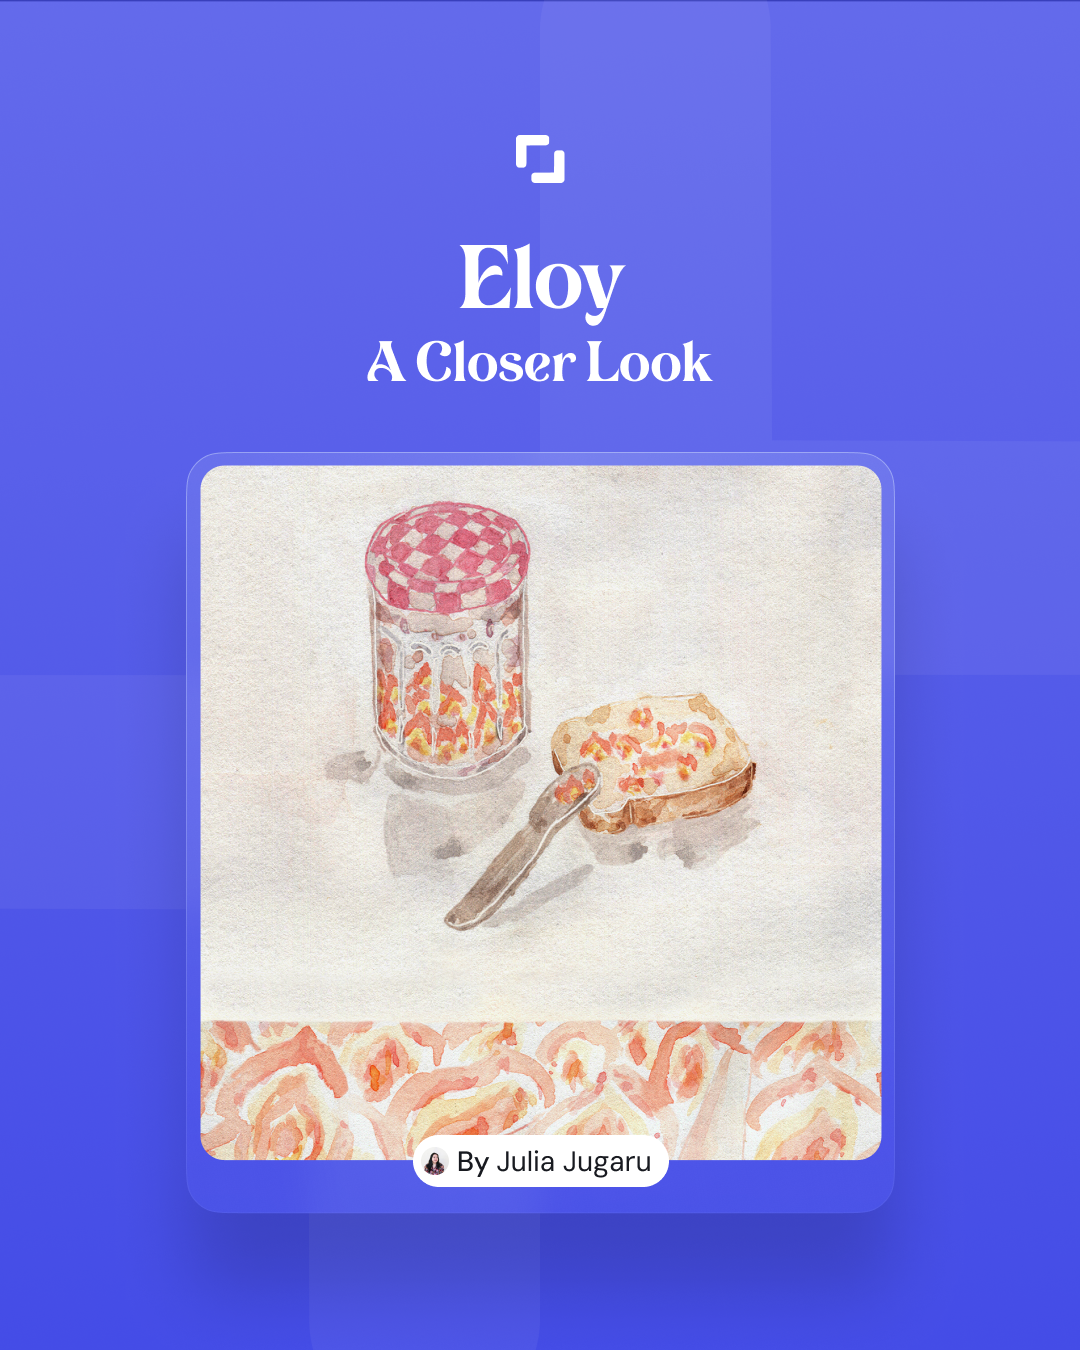 eloy: A Closer Look